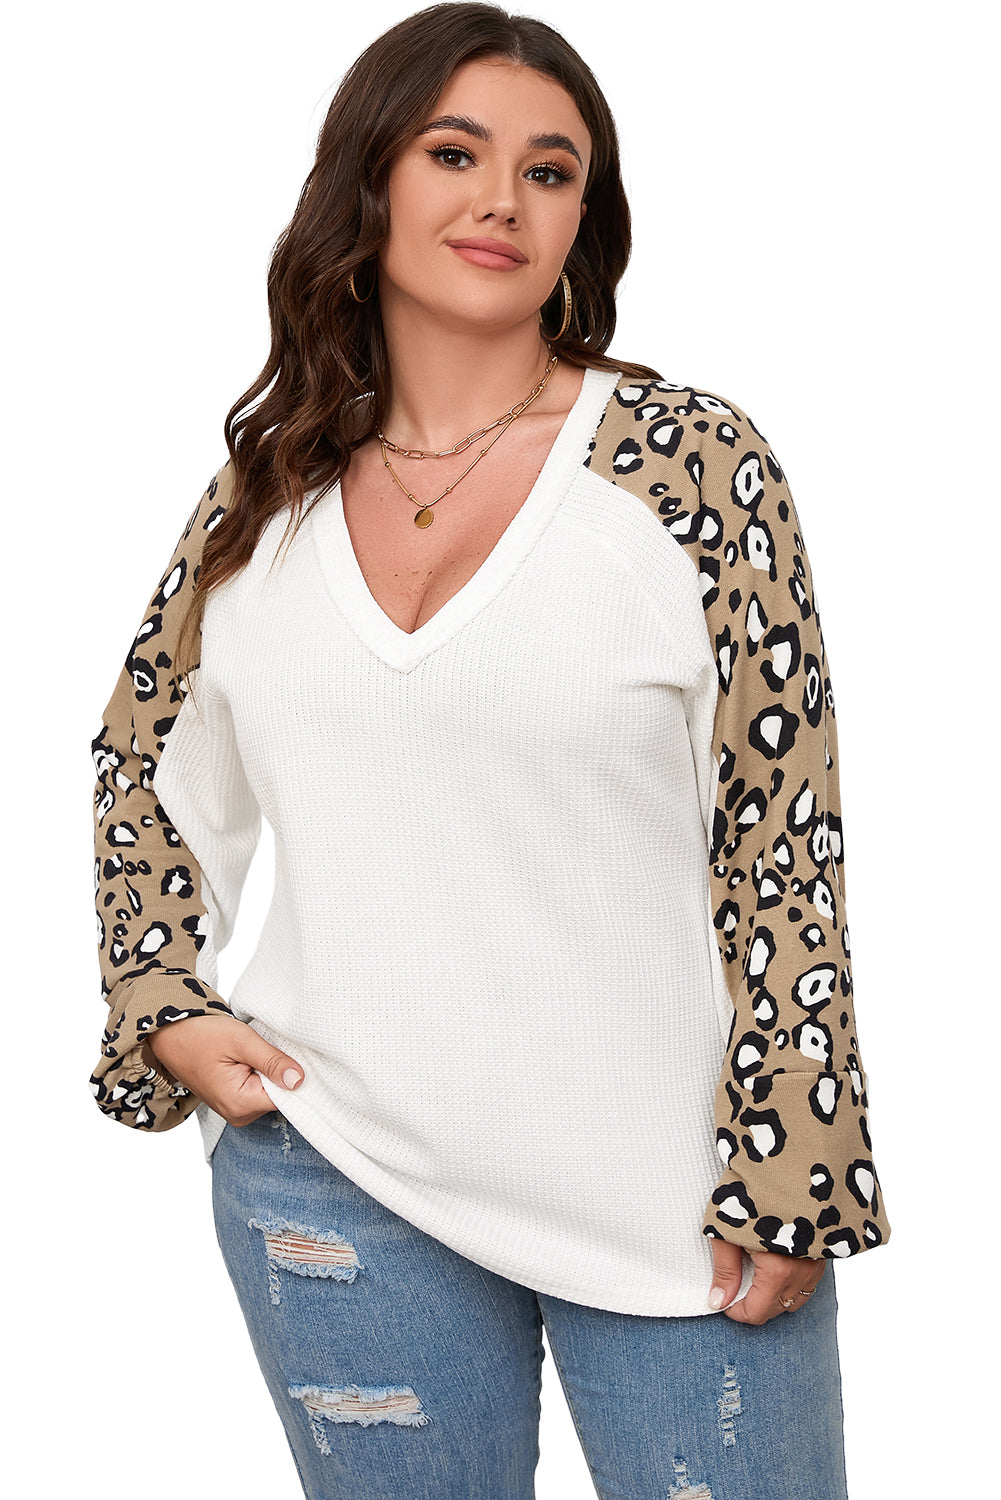 Majica s dugim rukavima u obliku kontrastnog leoparda s uzorkom velike veličine i bež boje